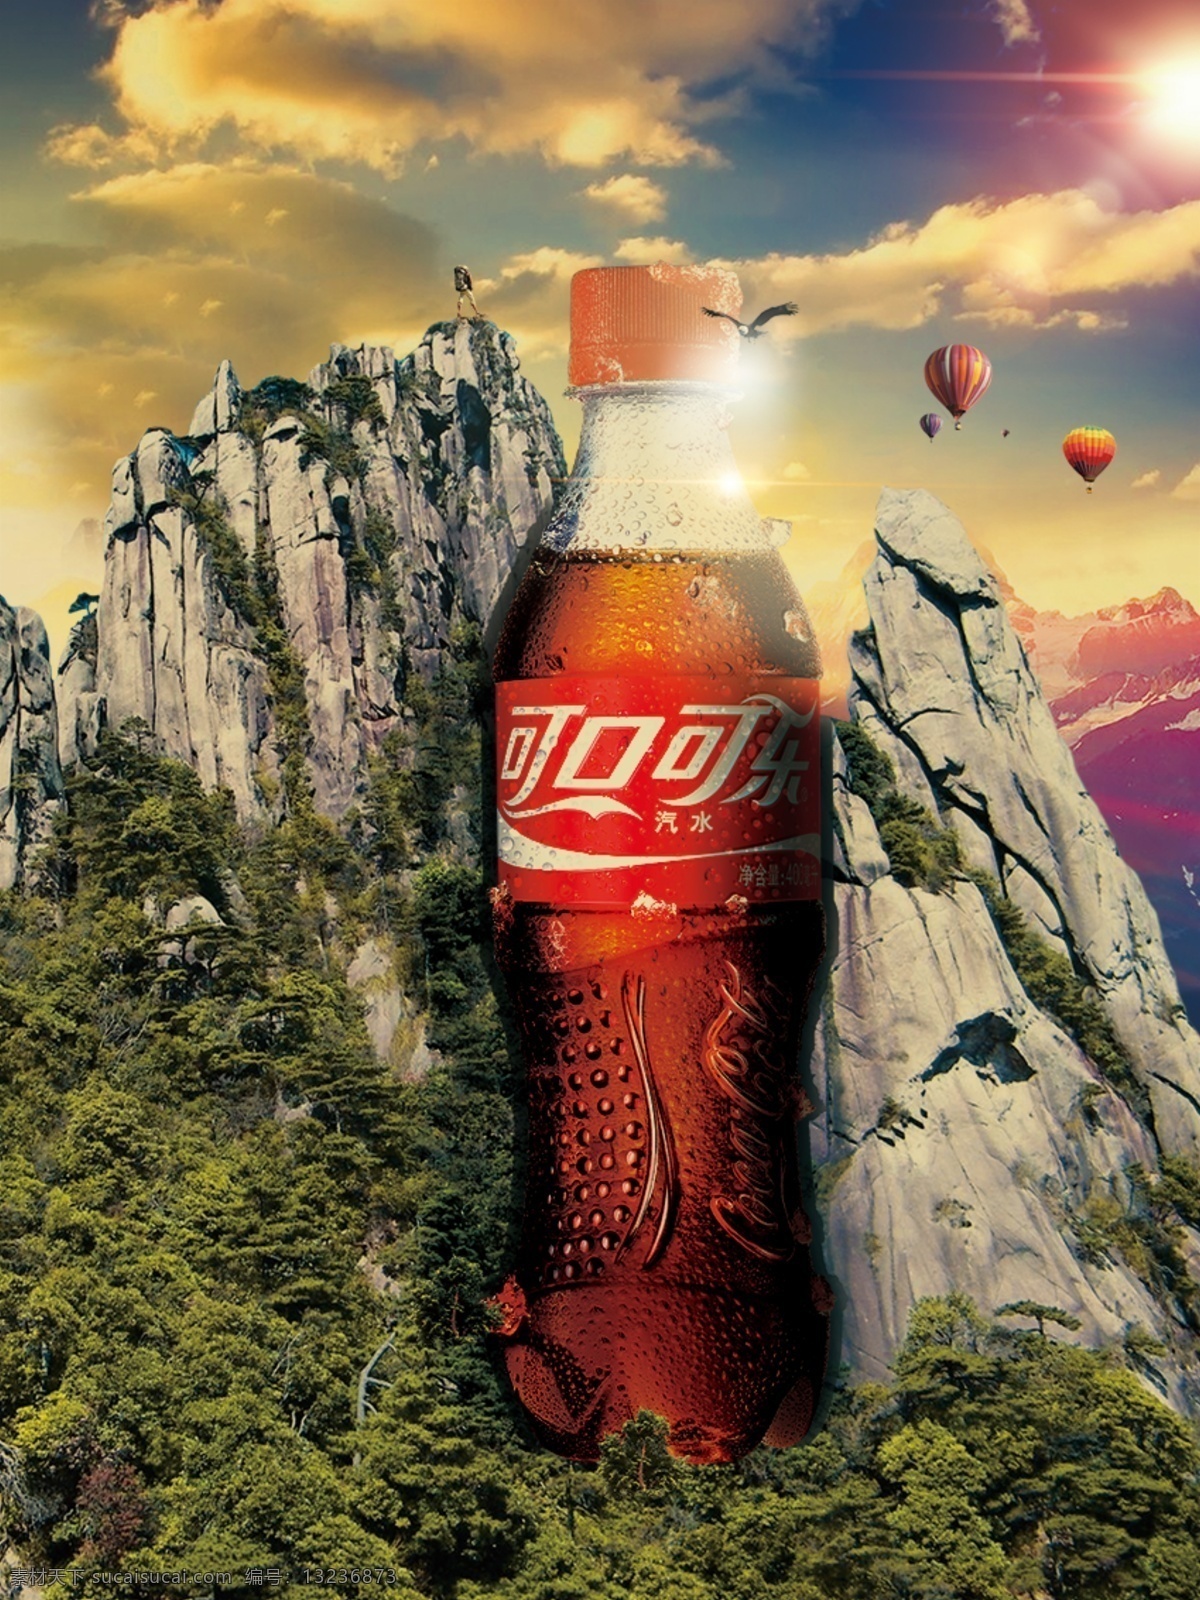 可口可乐 广告 背景 山 水 热气球 云 高光 太阳 树